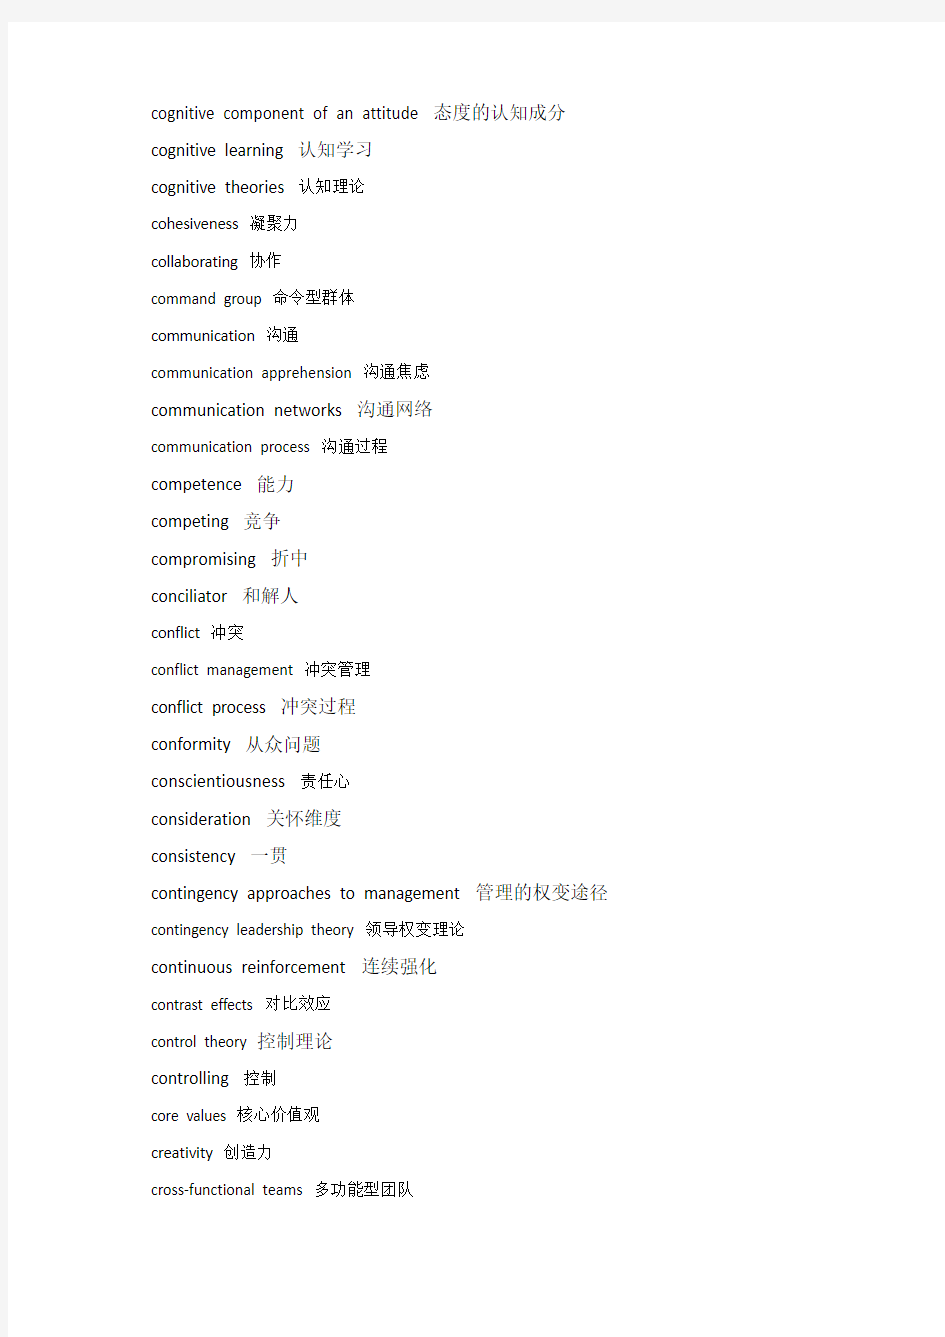 中国人民大学组织行为学考研复试常用英语词汇